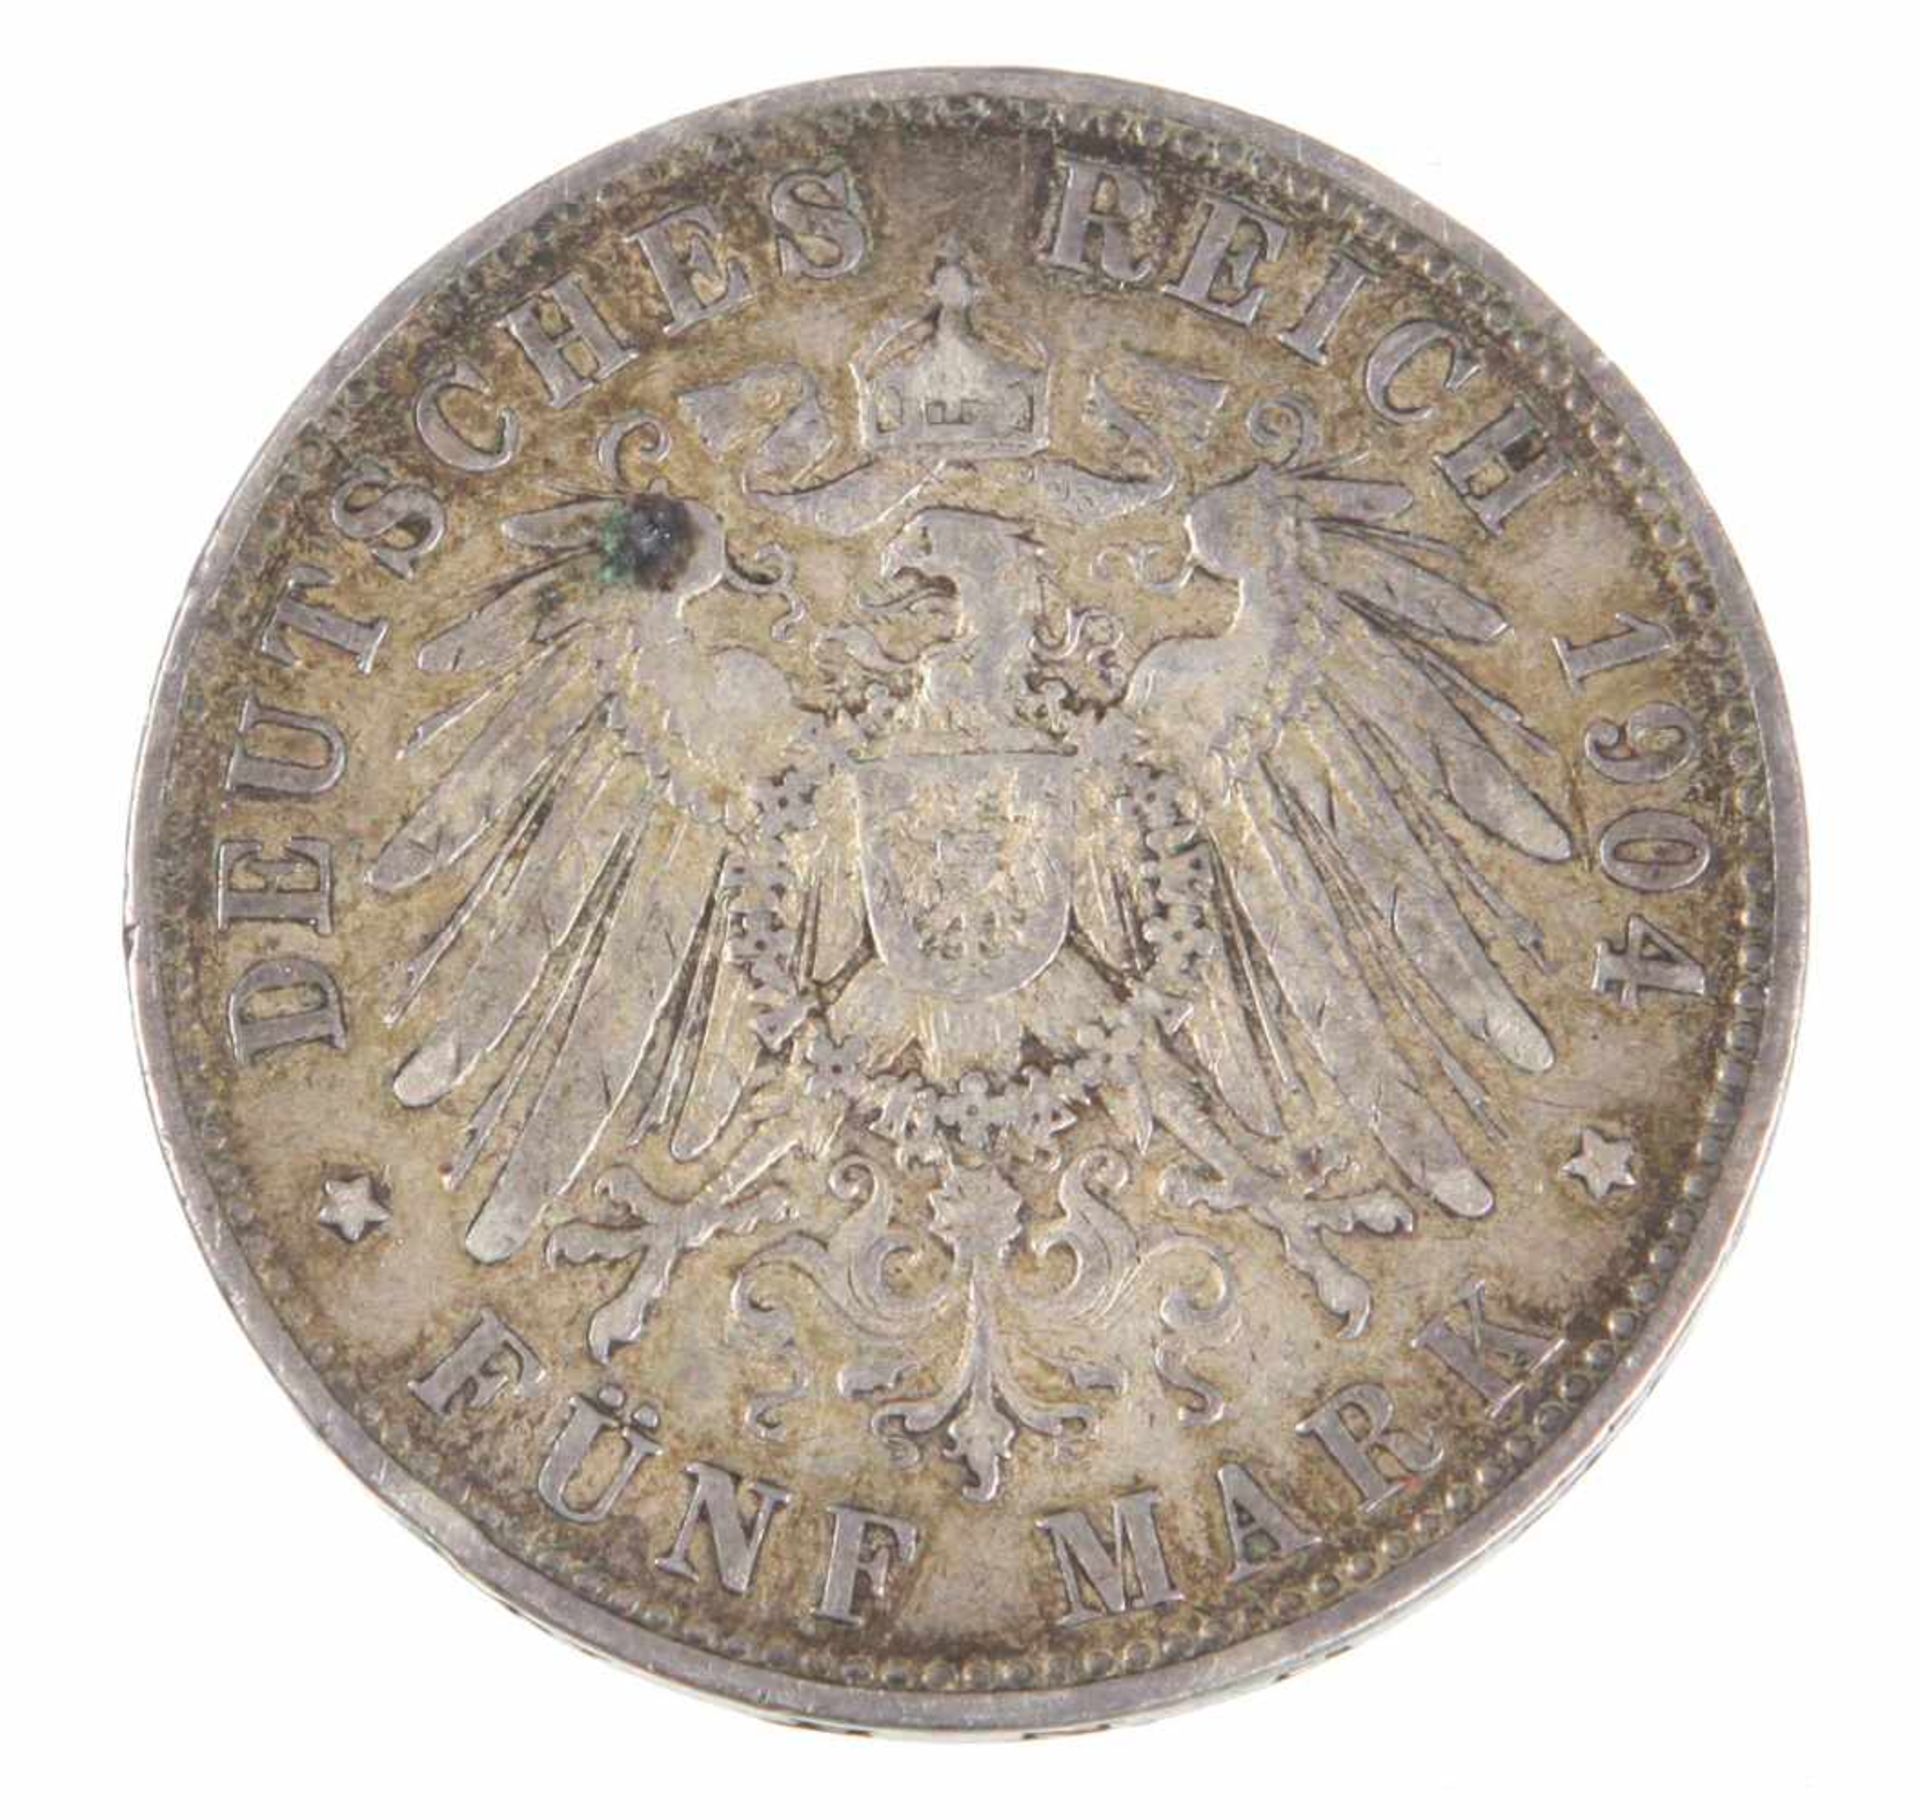 5 Mark Wilhelm II Preussen 1904 ASilbermünze Fünf Mark Deutsches Reich 1904, so um gekrönten - Bild 2 aus 2